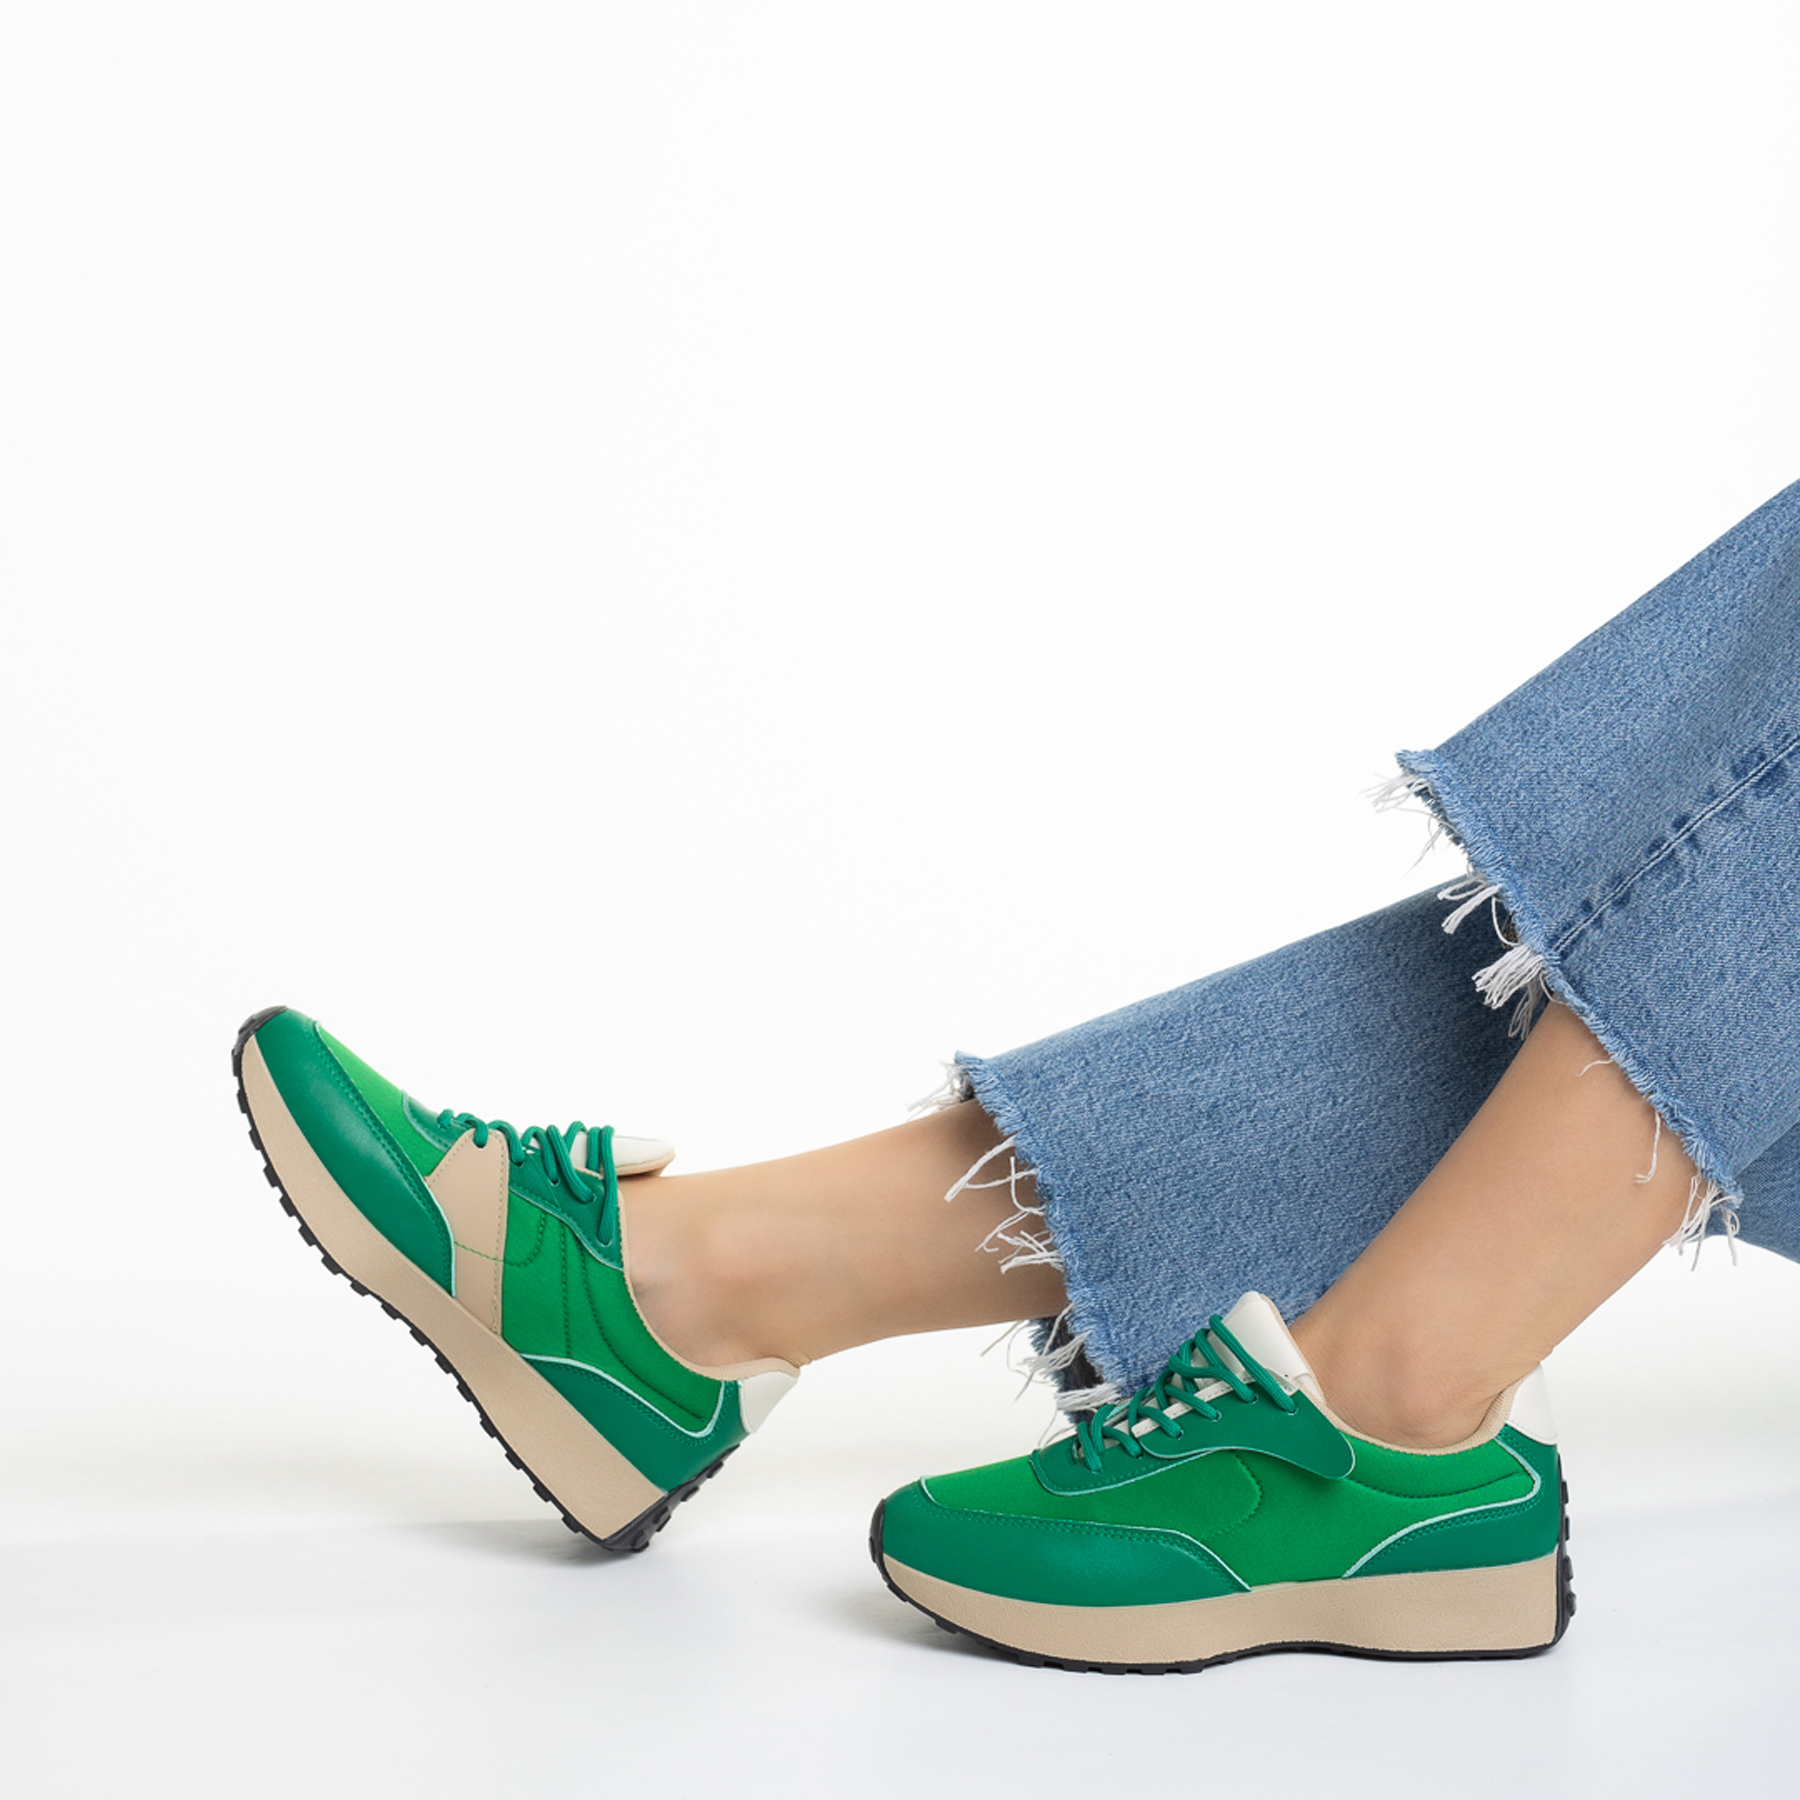 Pantofi sport dama verzi din piele ecologica si material textil Refugia kalapod.net imagine reduceri